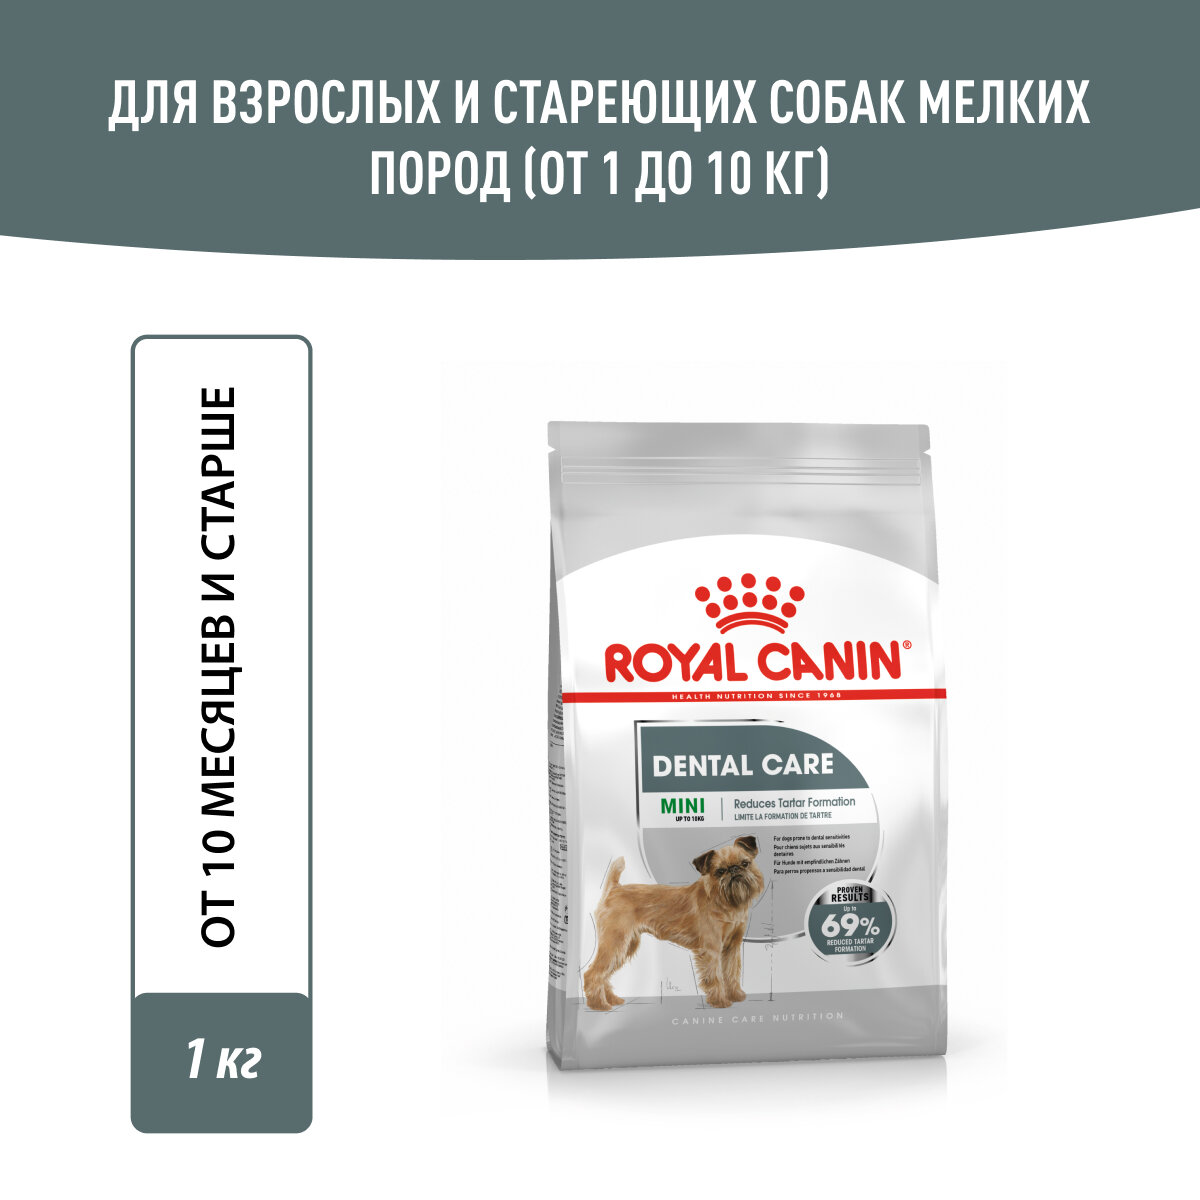 Royal Canin Mini Dental Care корм для собак мелких пород с повышенной чувствительностью зубов Курица, 1 кг.